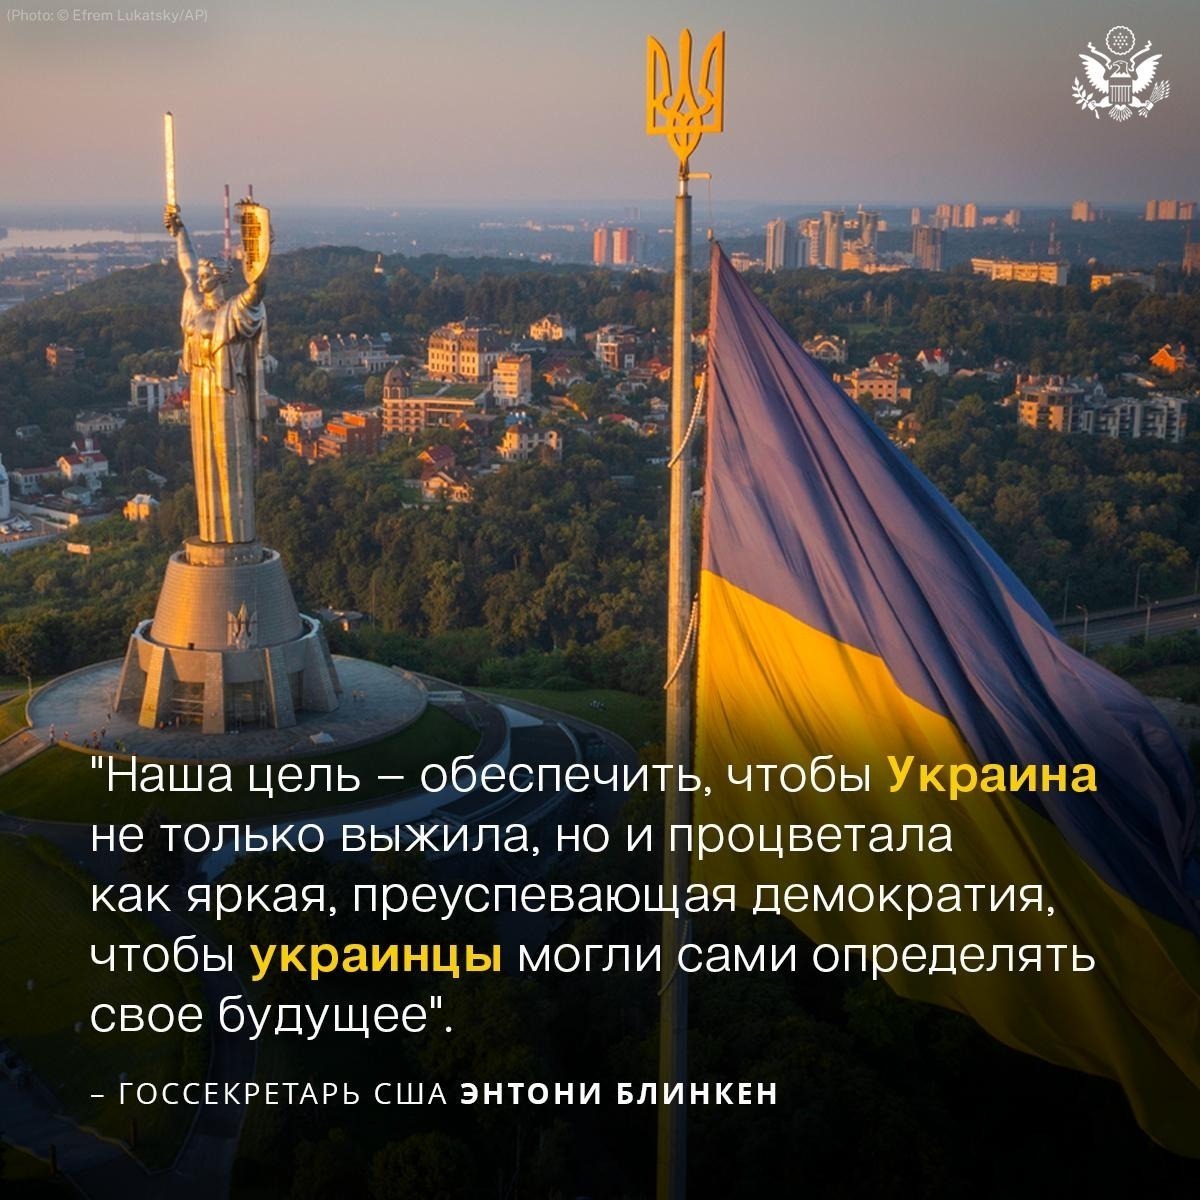 .@SecBlinken: Народ Украины продемонстрировал удивительную храбрость и стойкость. США будут поддерживать украинцев до тех пор, пока в 🇺🇦 не будет установлен справедливый и прочный мир.